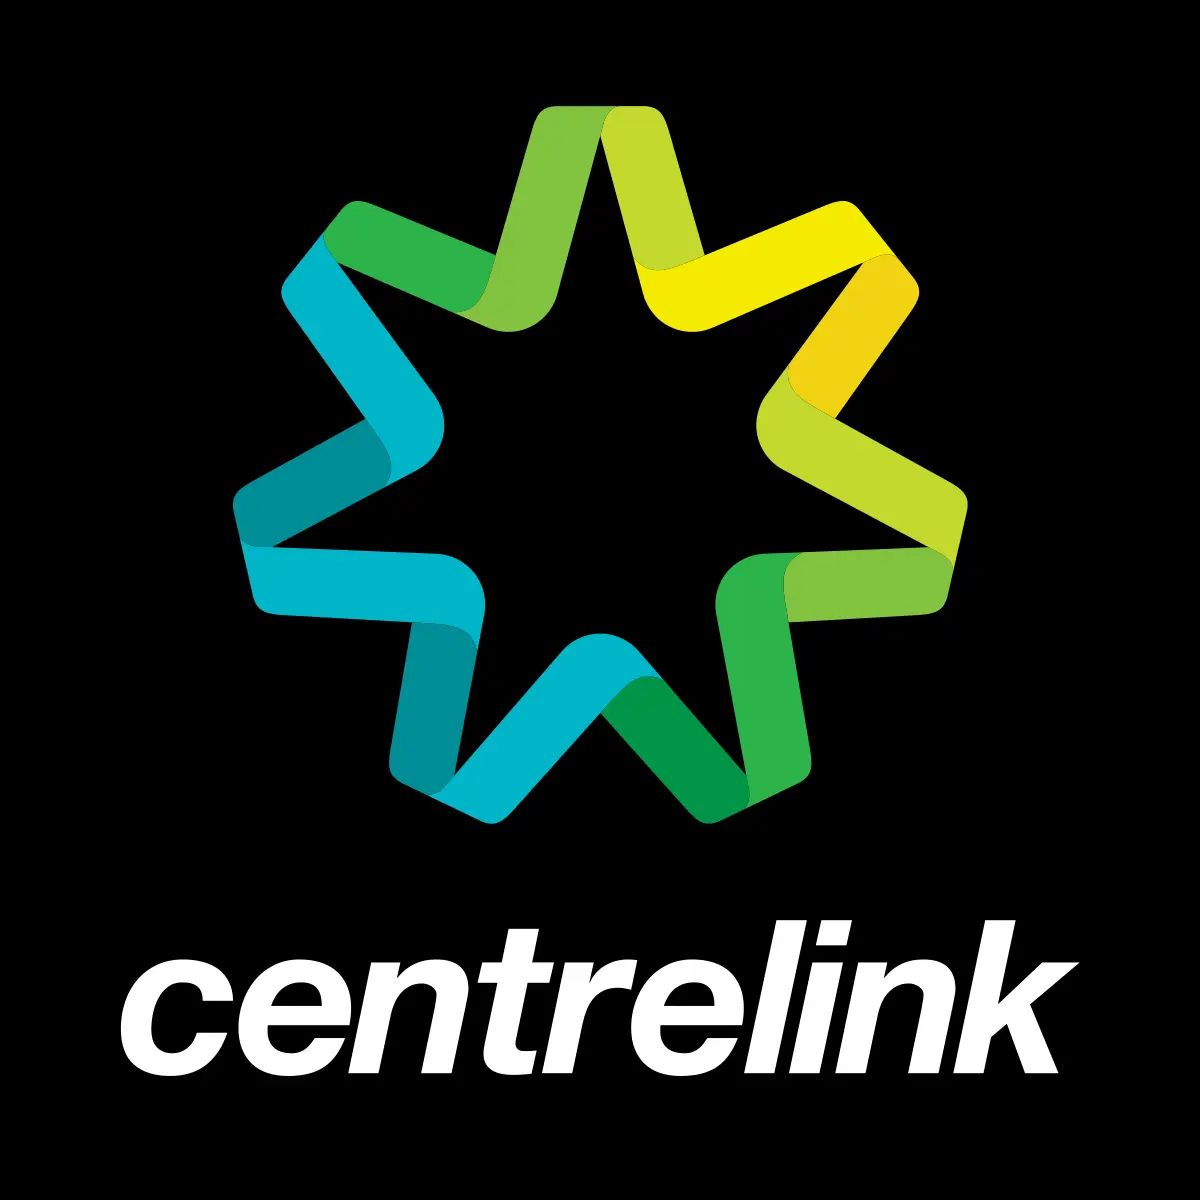 The centrelink logo.